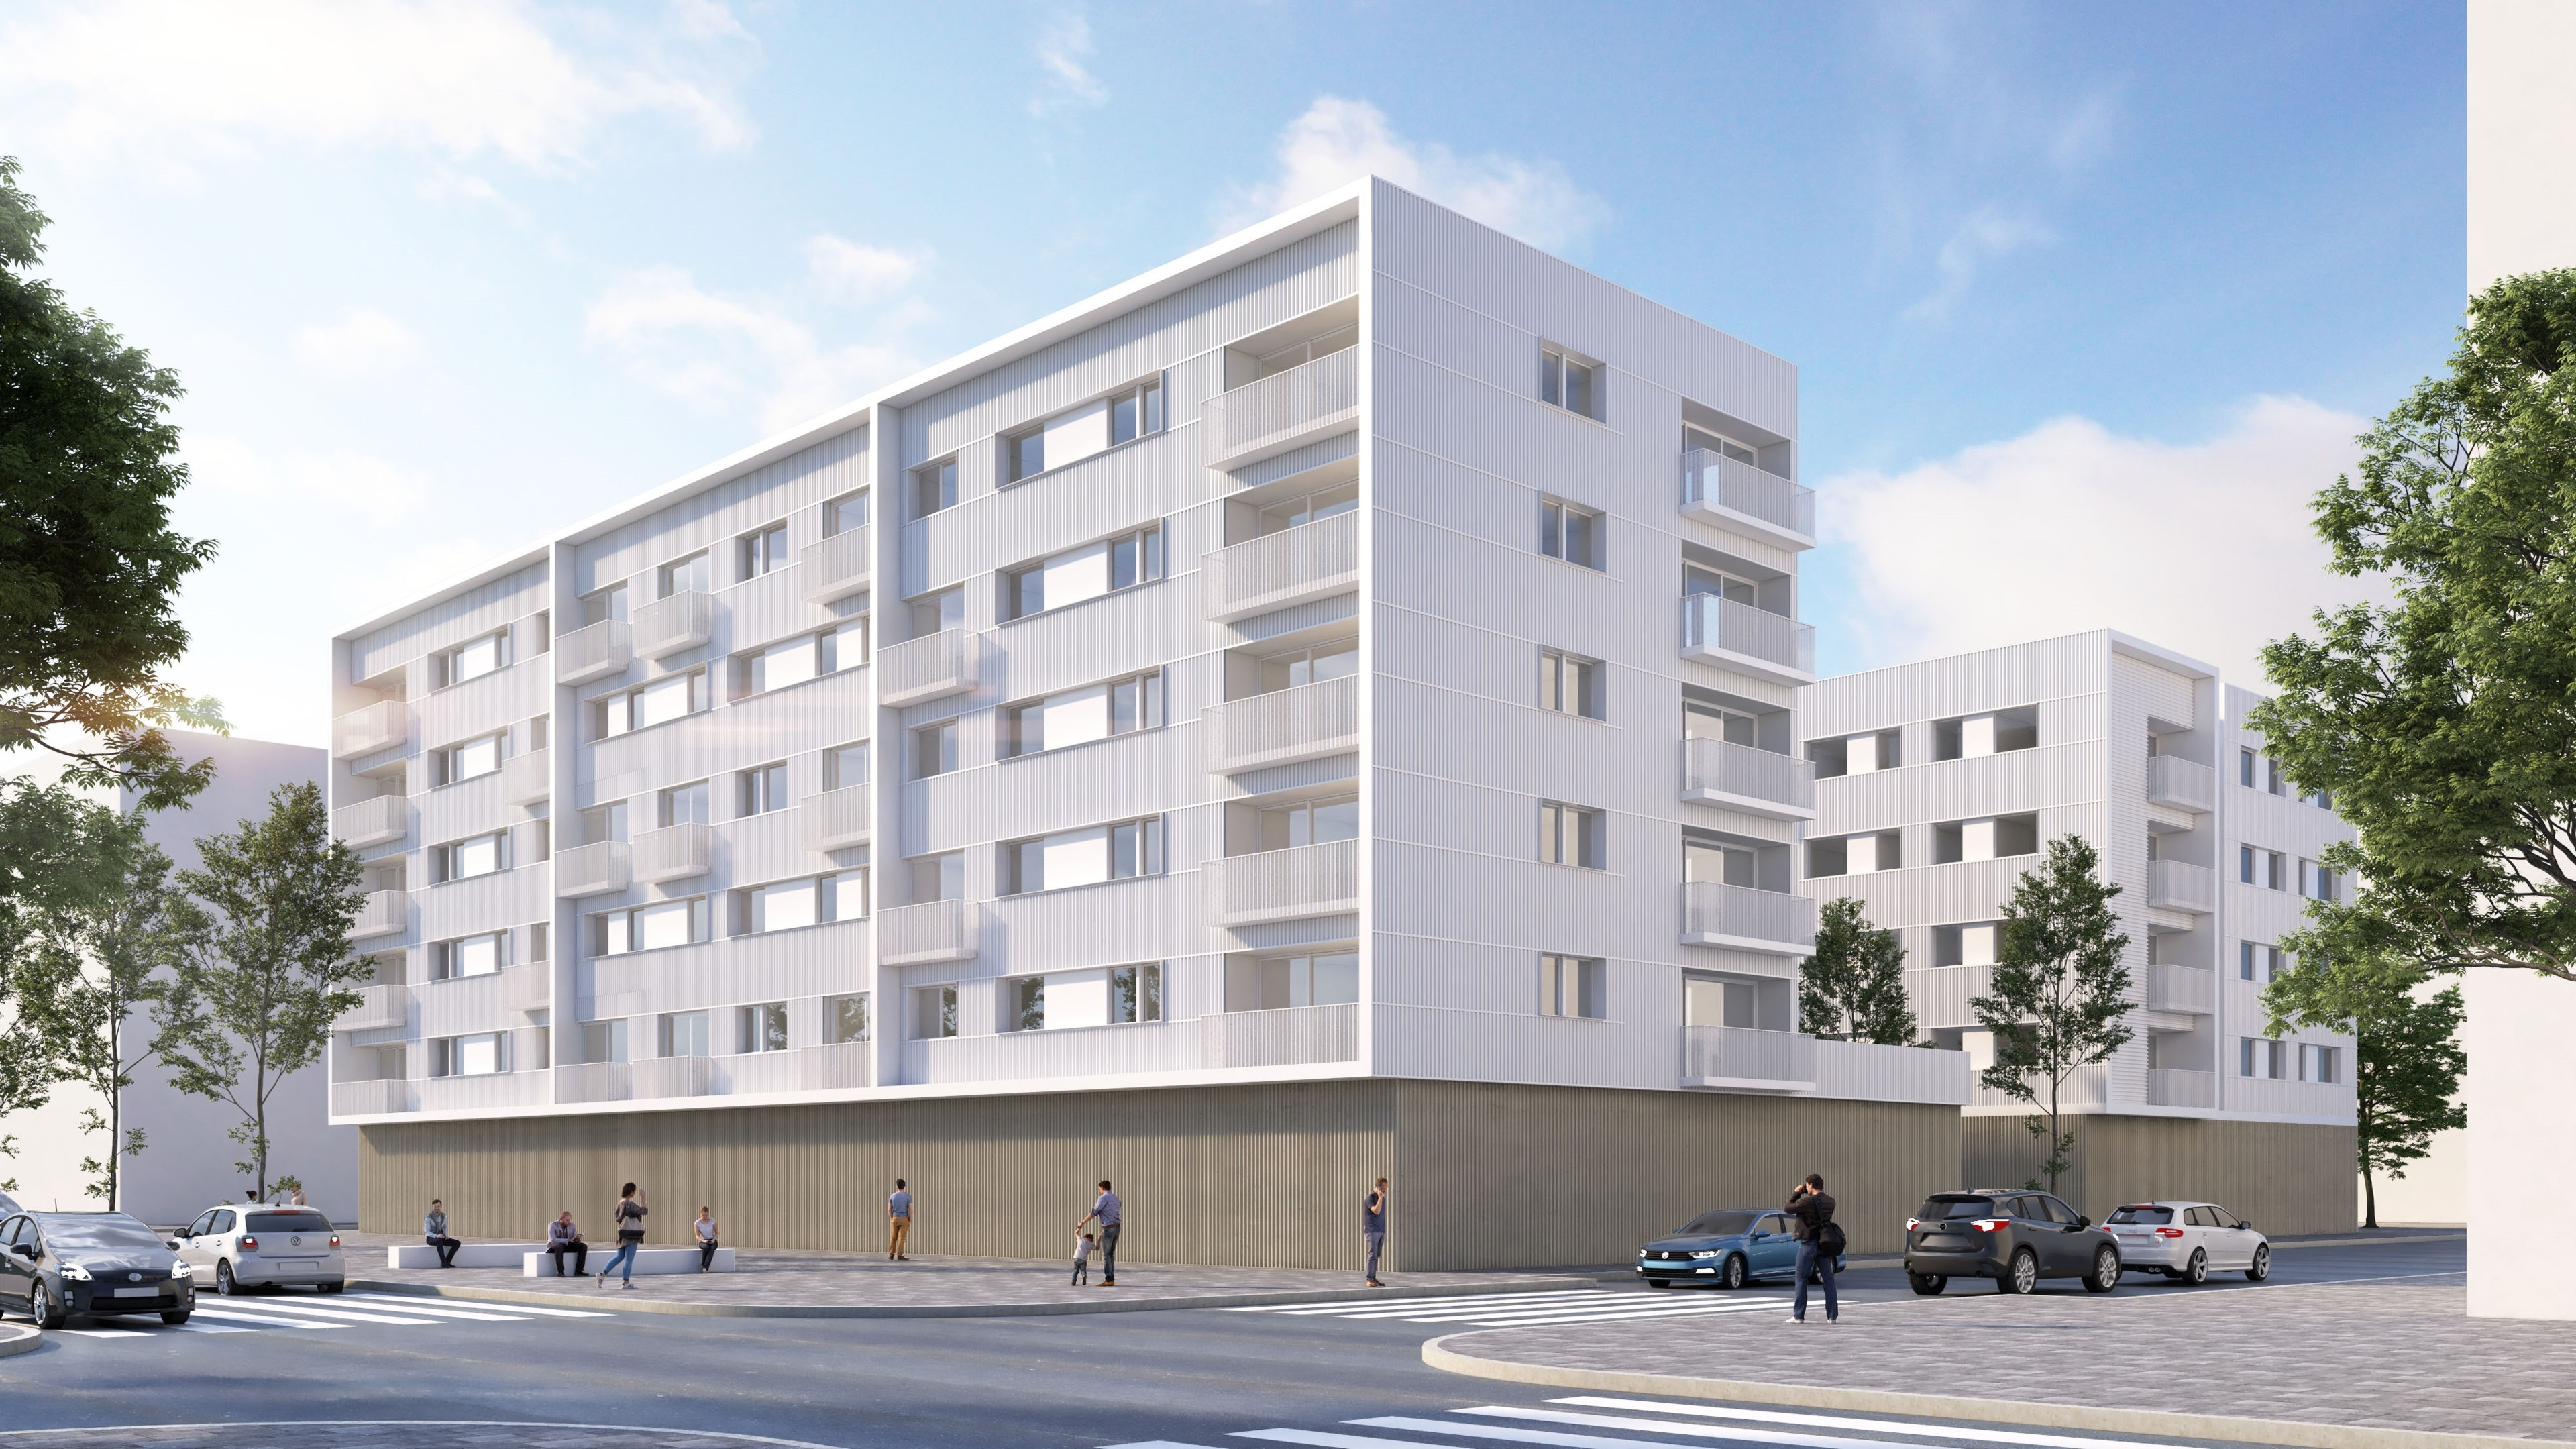 Grupo rozwija się dzięki umowie o wartości 180 milionów euro z Lorem Hannerem i przyspiesza, budując 100 domów w Polsce